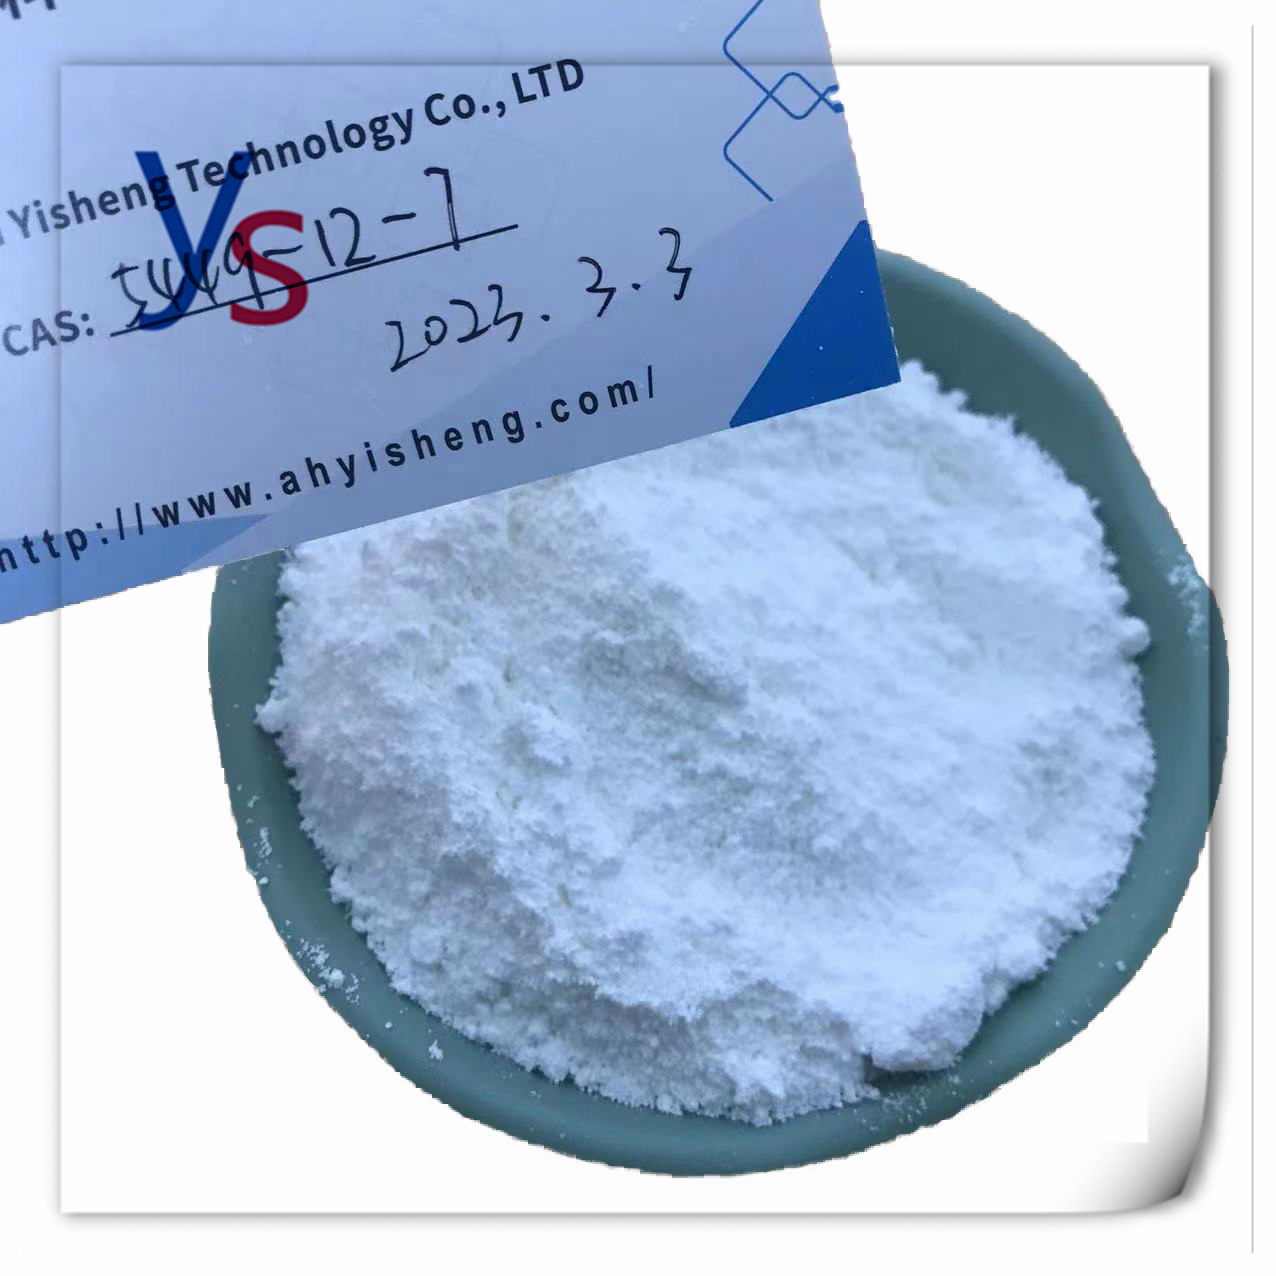 Cas 5449-12-7 Top Quality White BMK Powder 